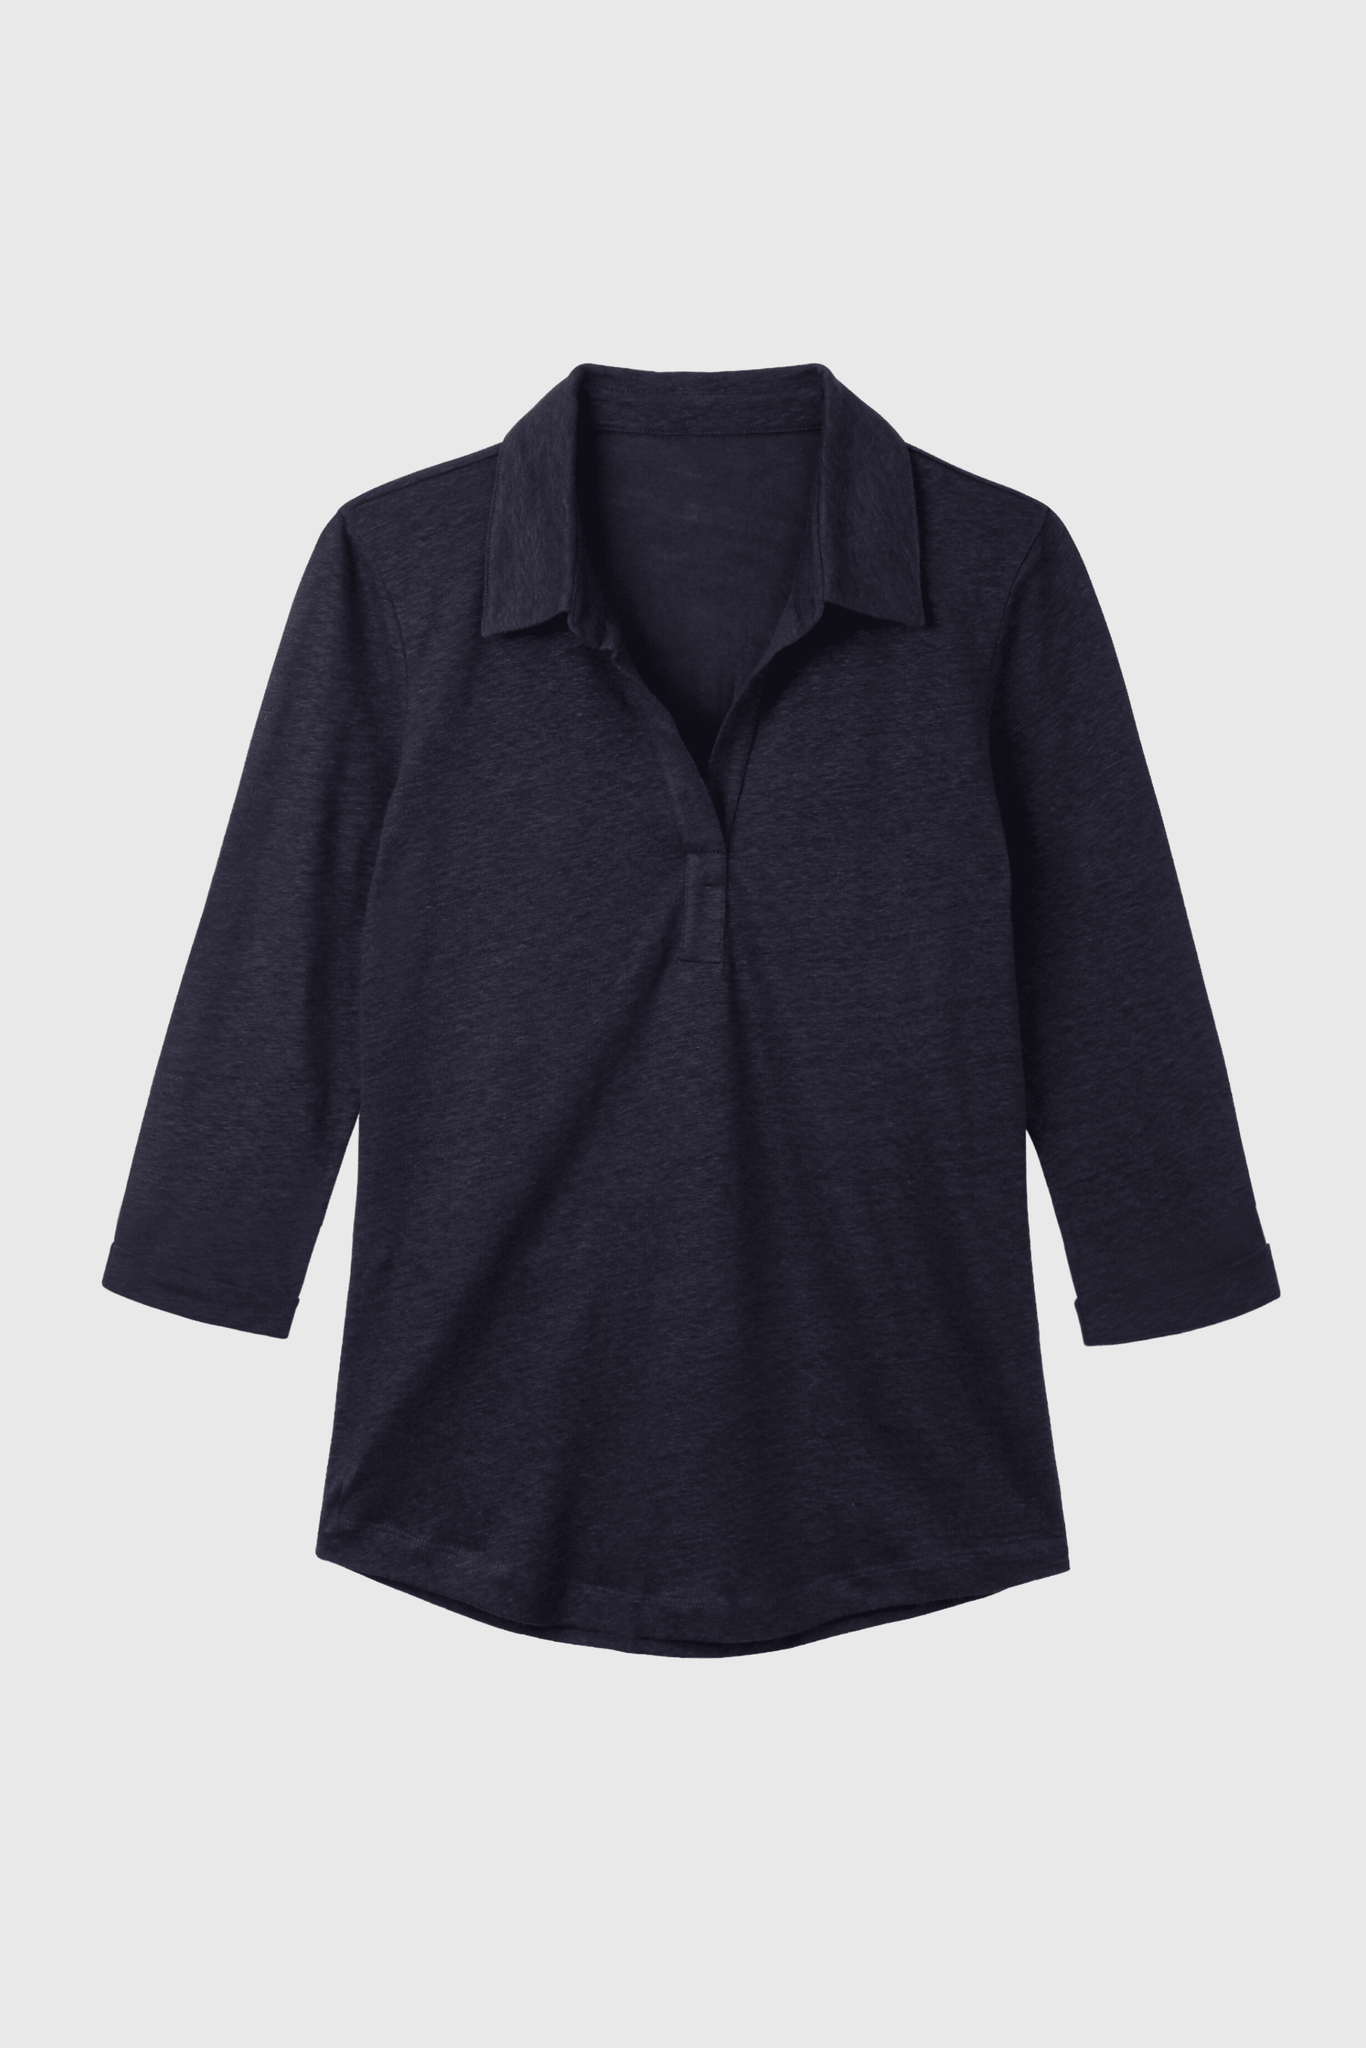 Collared Linen T-shirt Women's 3/4 Sleeve T-shirt Lavender Hill